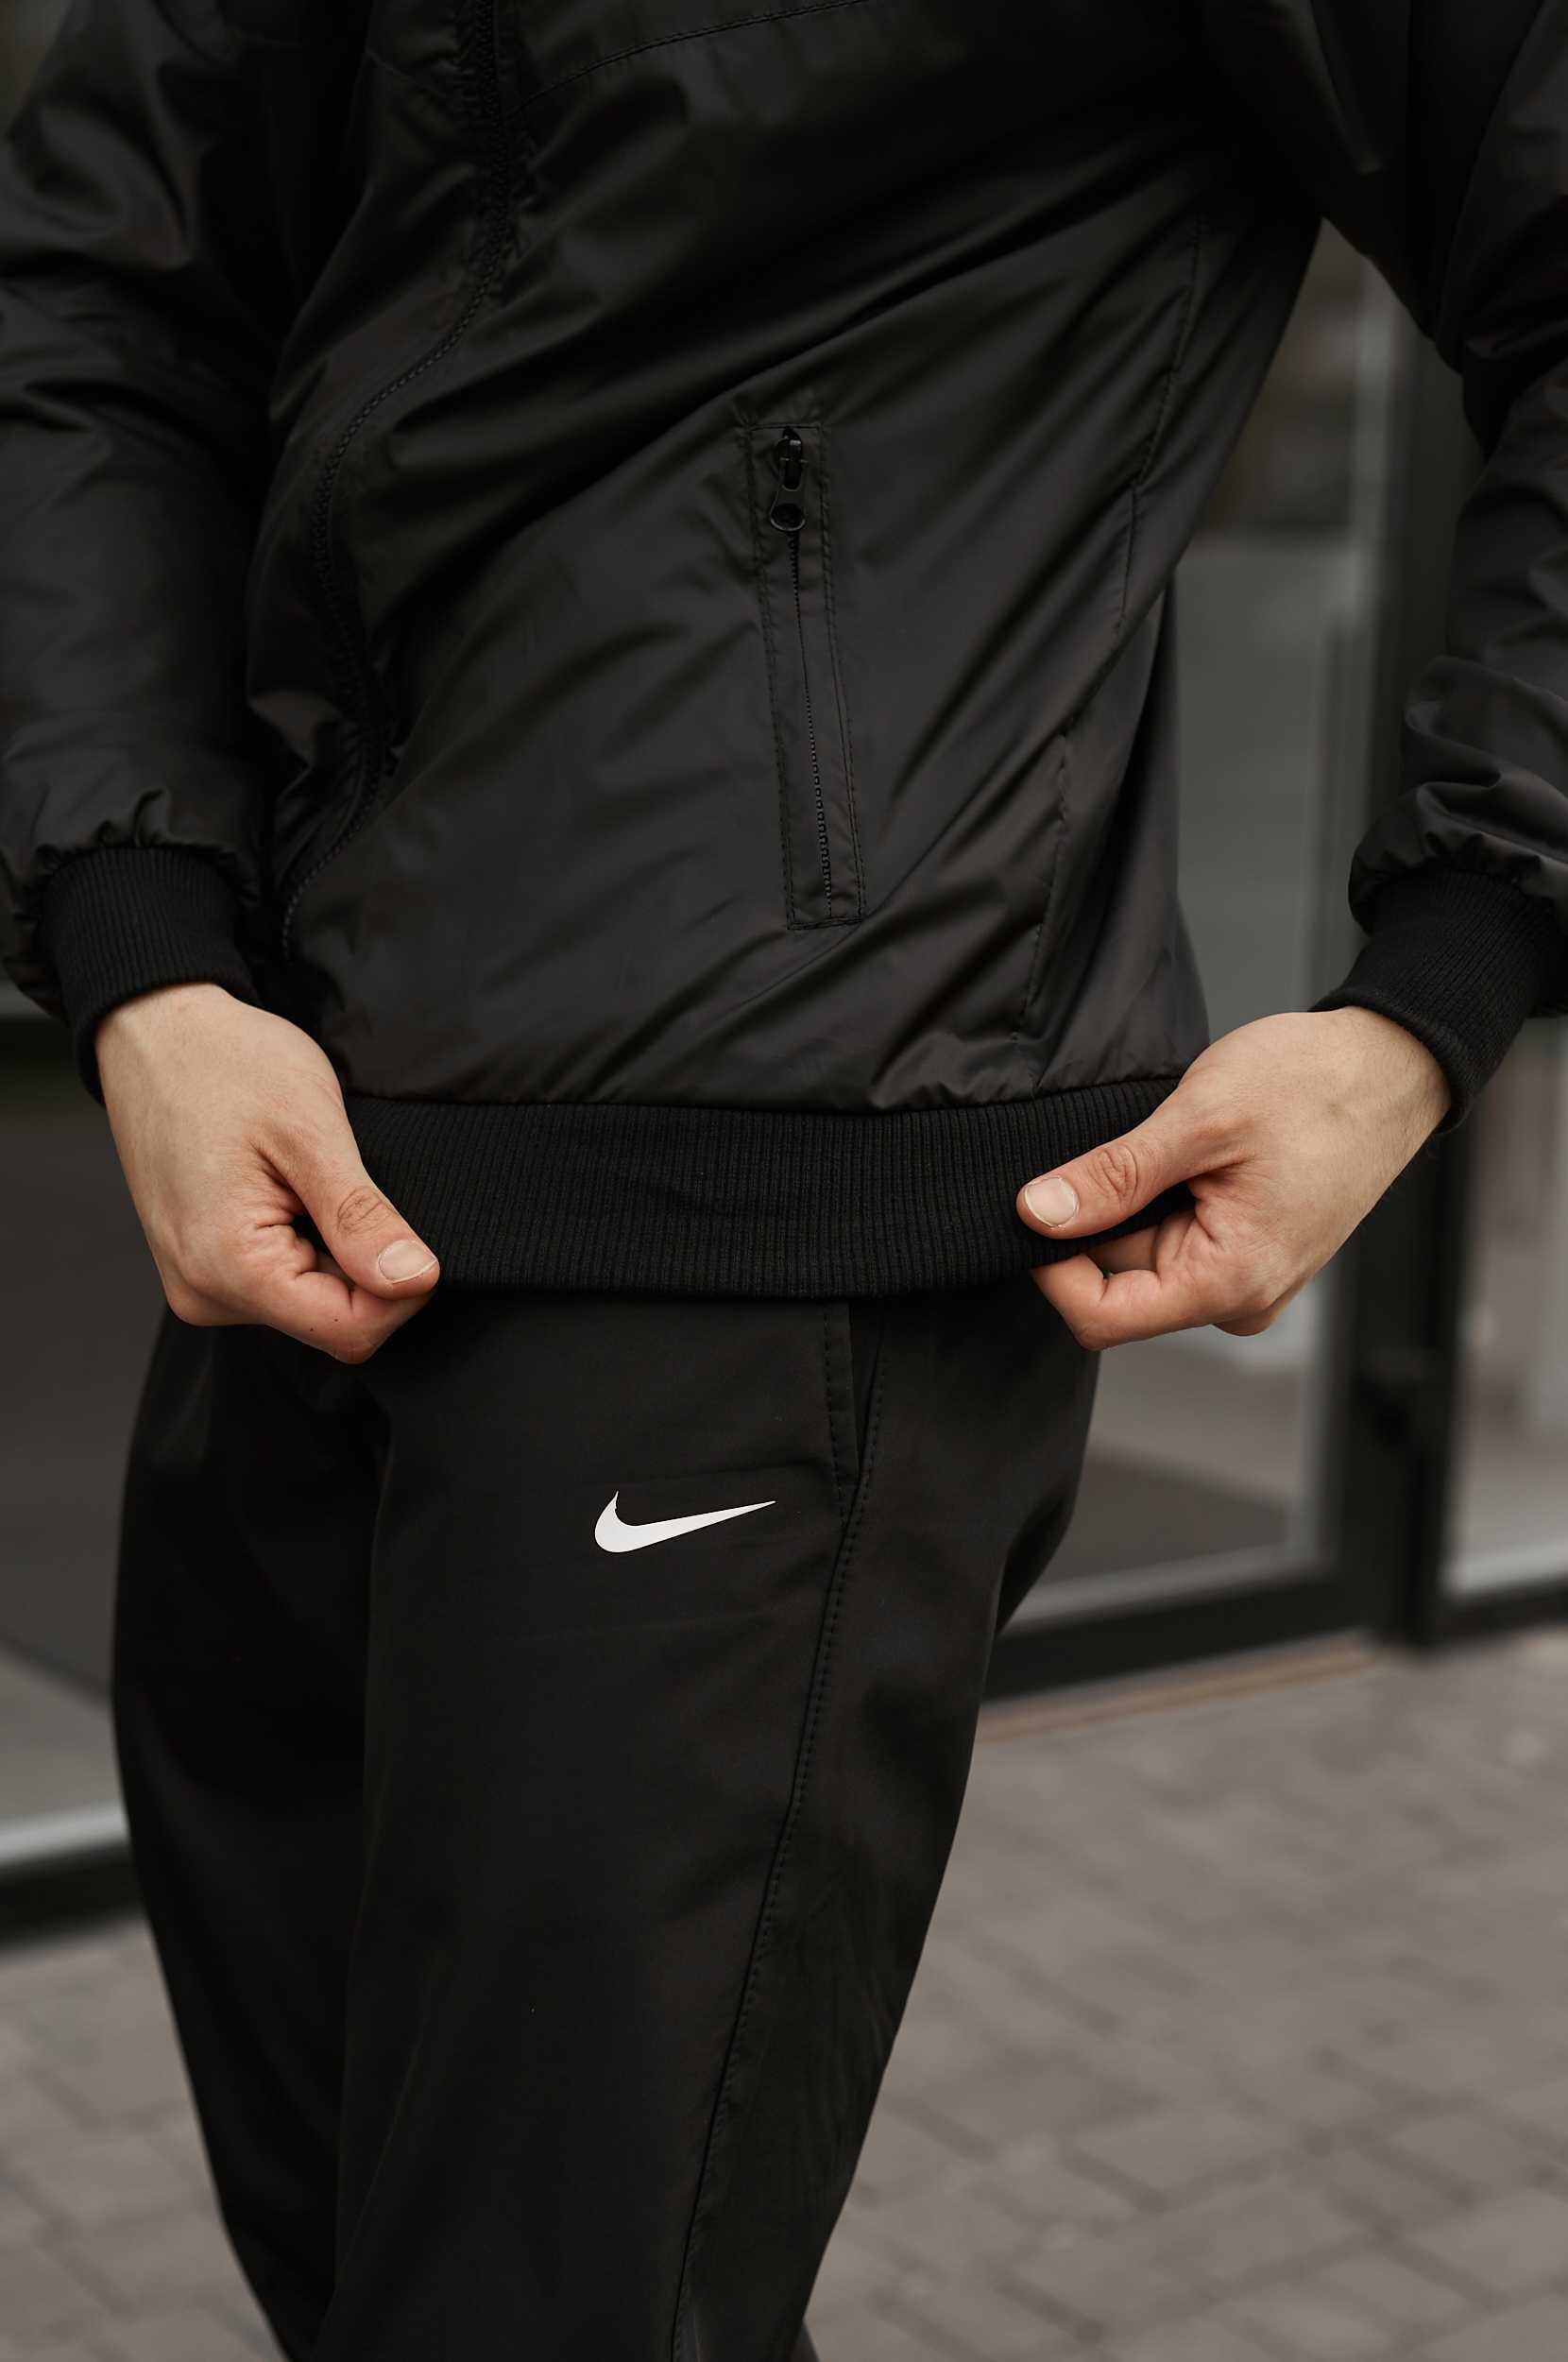 Мужской спортивный костюм весенний осенний черный Nike Найк + барсетка